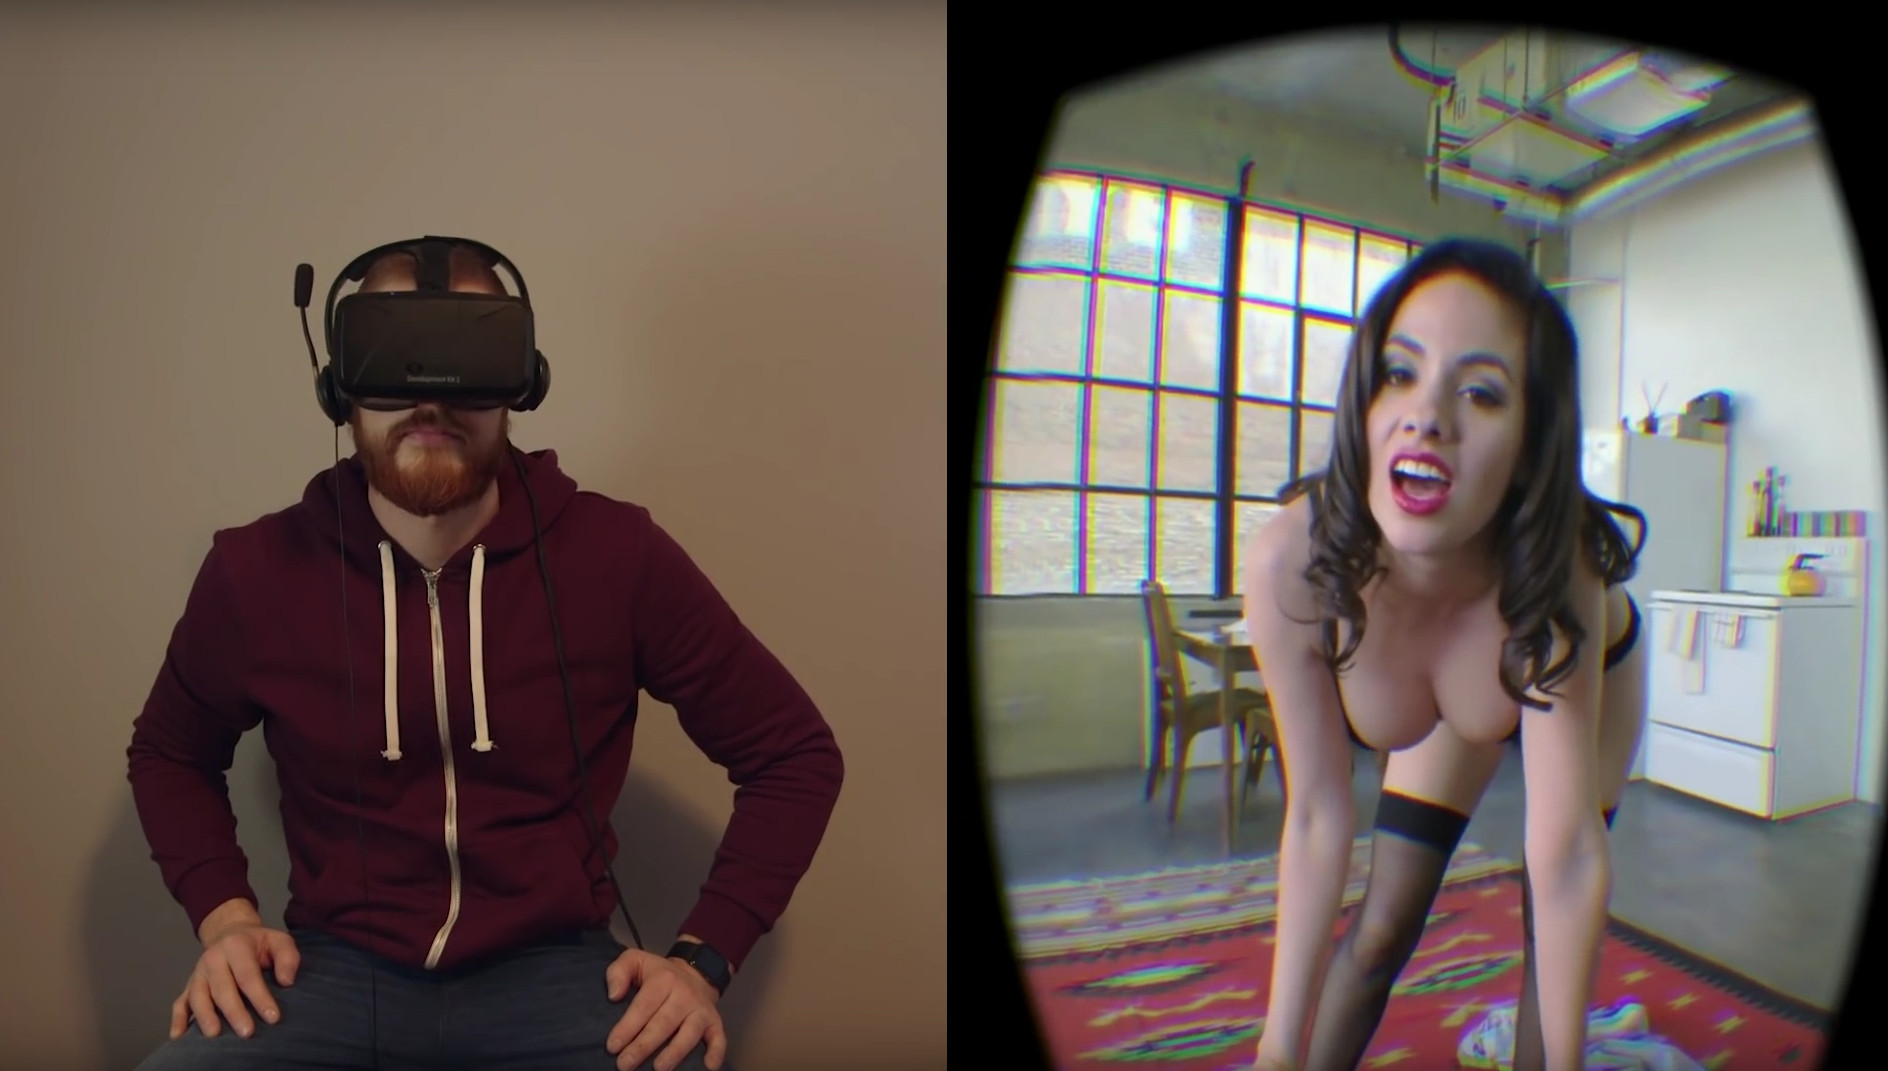 Virales Video "Virtual Reality Striptease Prank" .